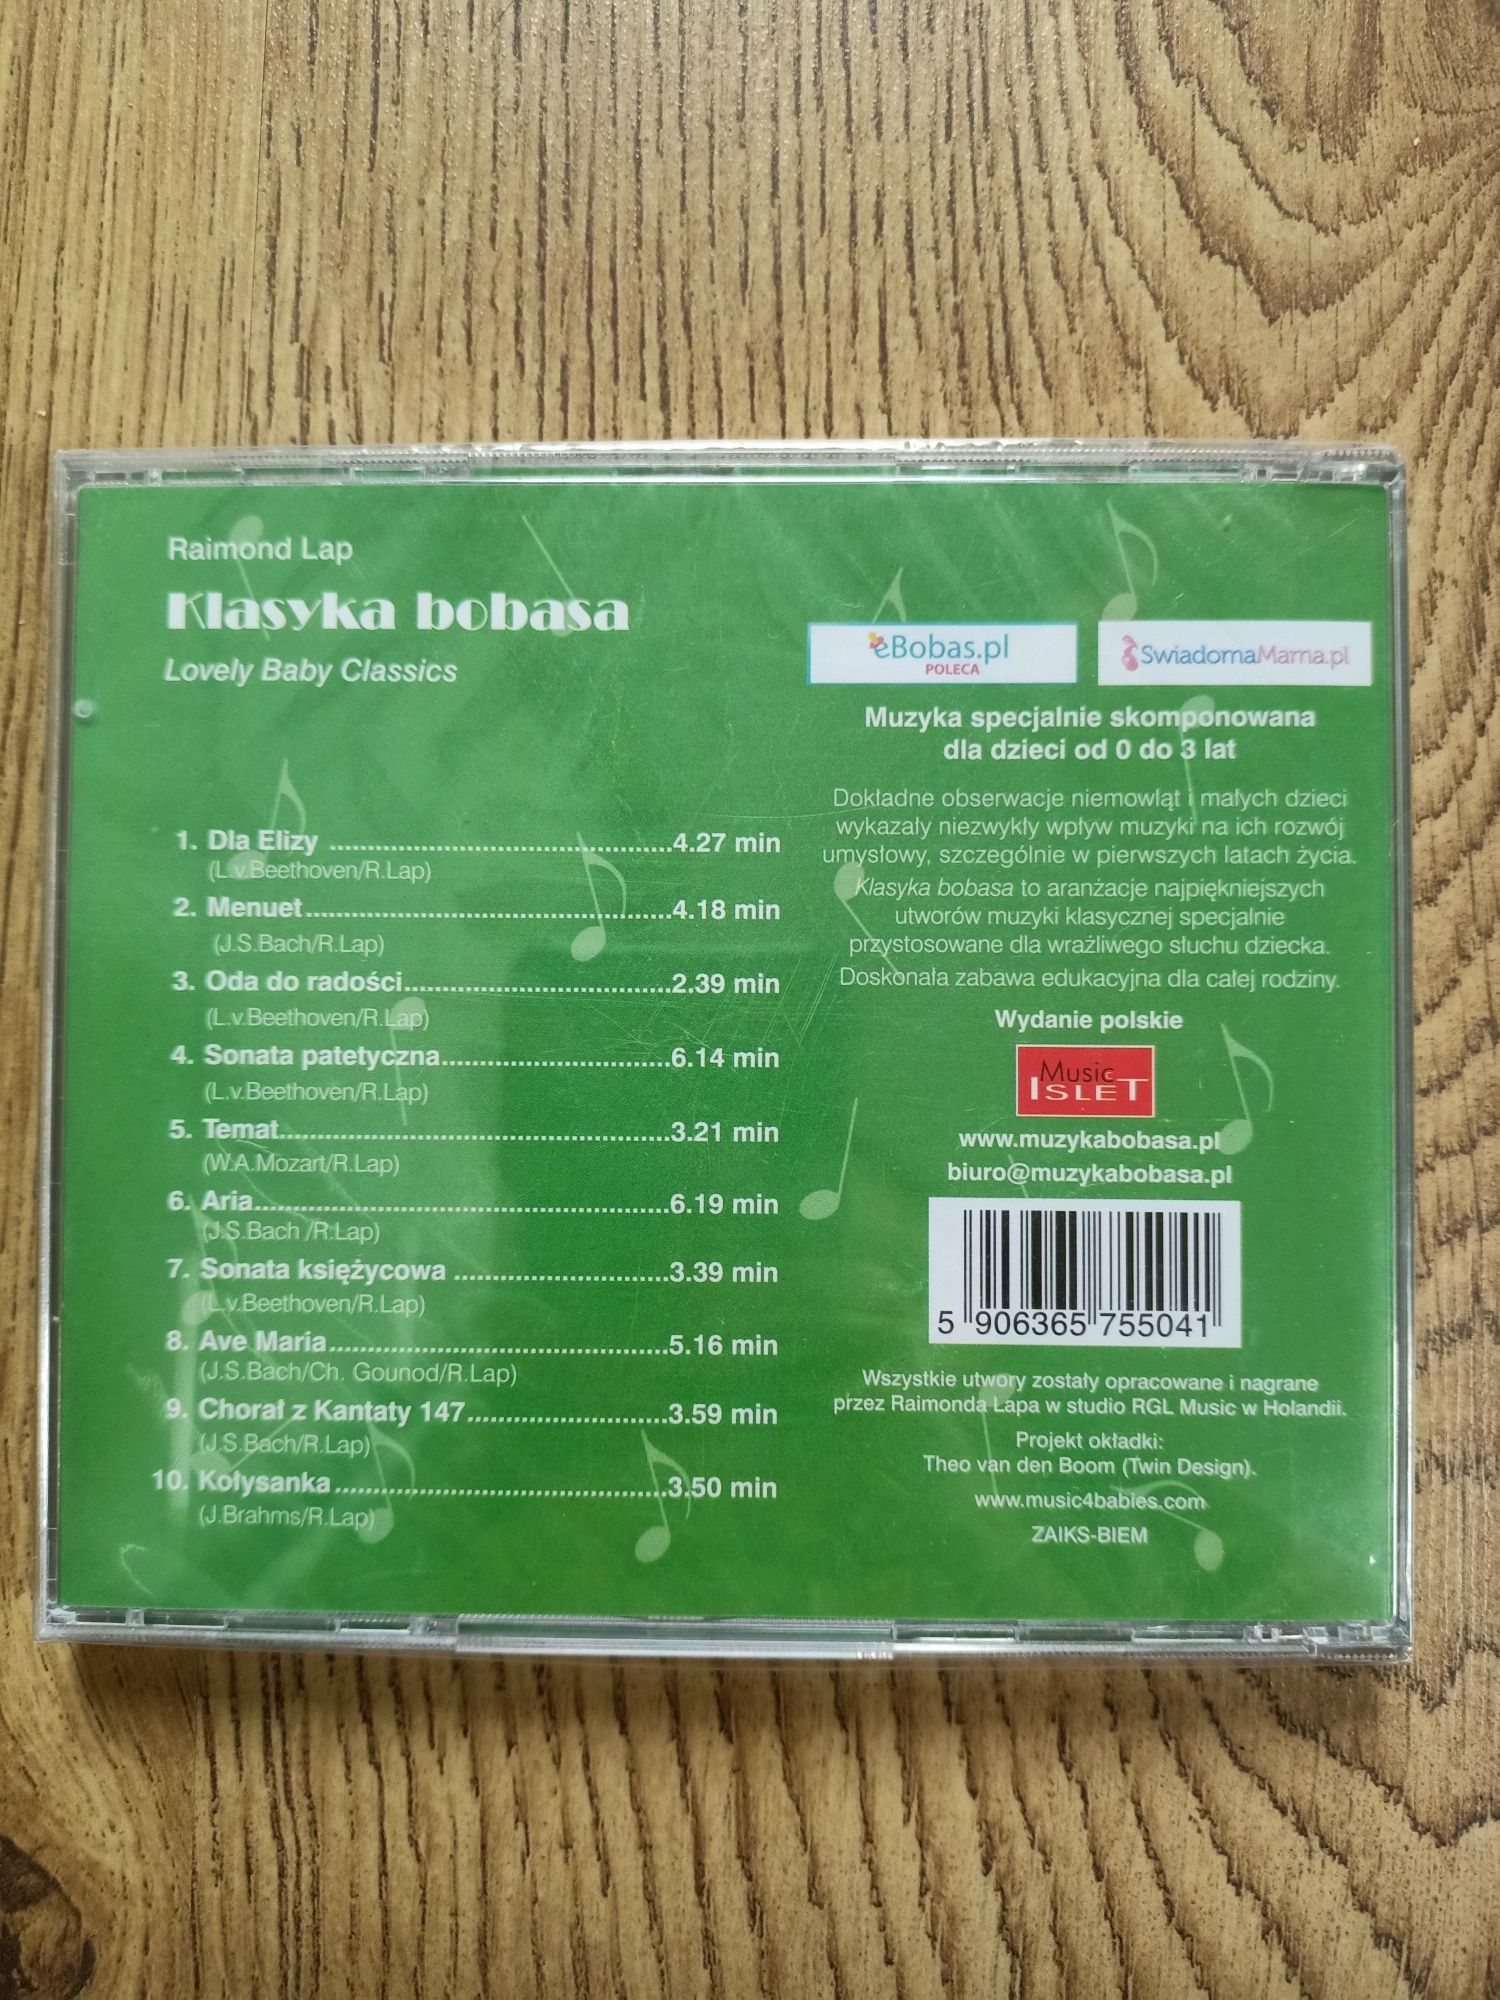 Płyta klasyka bobasa muzyka dla dzieci od 0 do 3 lat